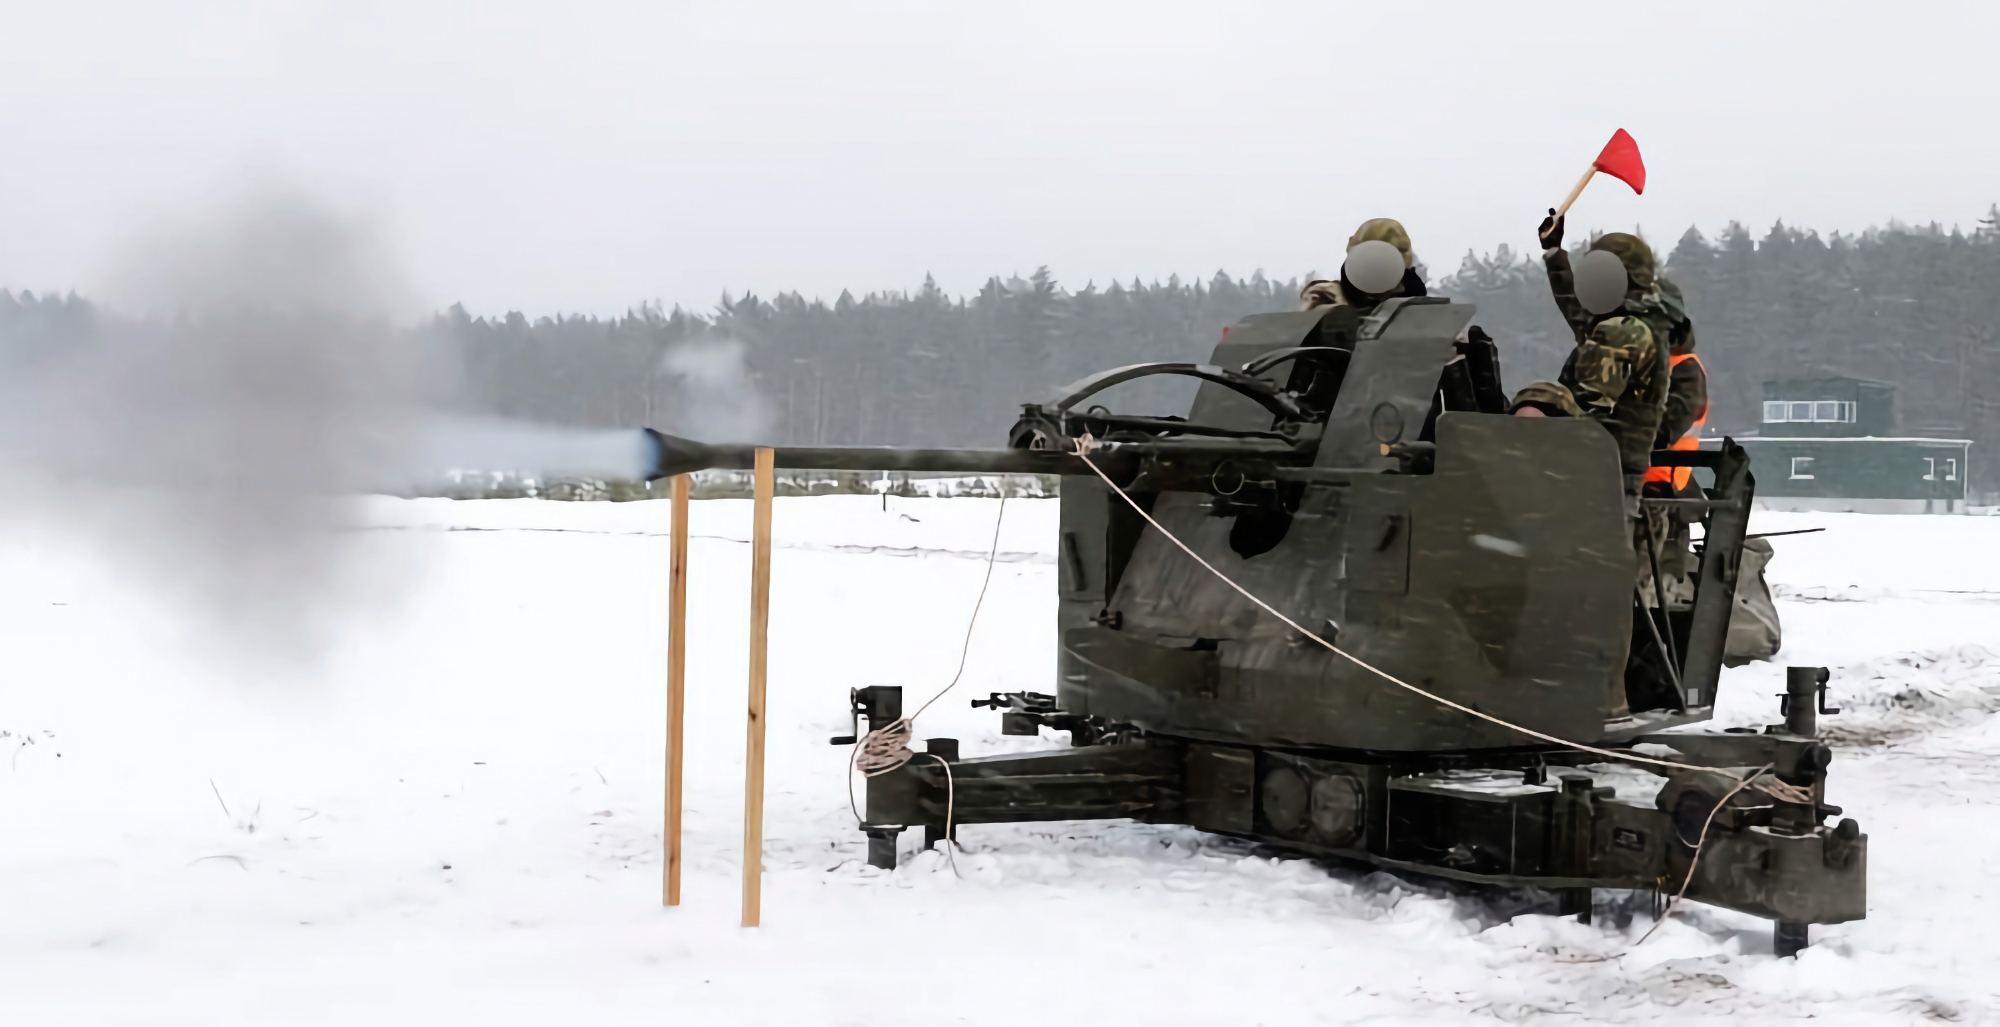 Ucrania recibe un lote de cañones antiaéreos suecos L-70 capaces de destruir objetivos aéreos a distancias de hasta 12,5 km.